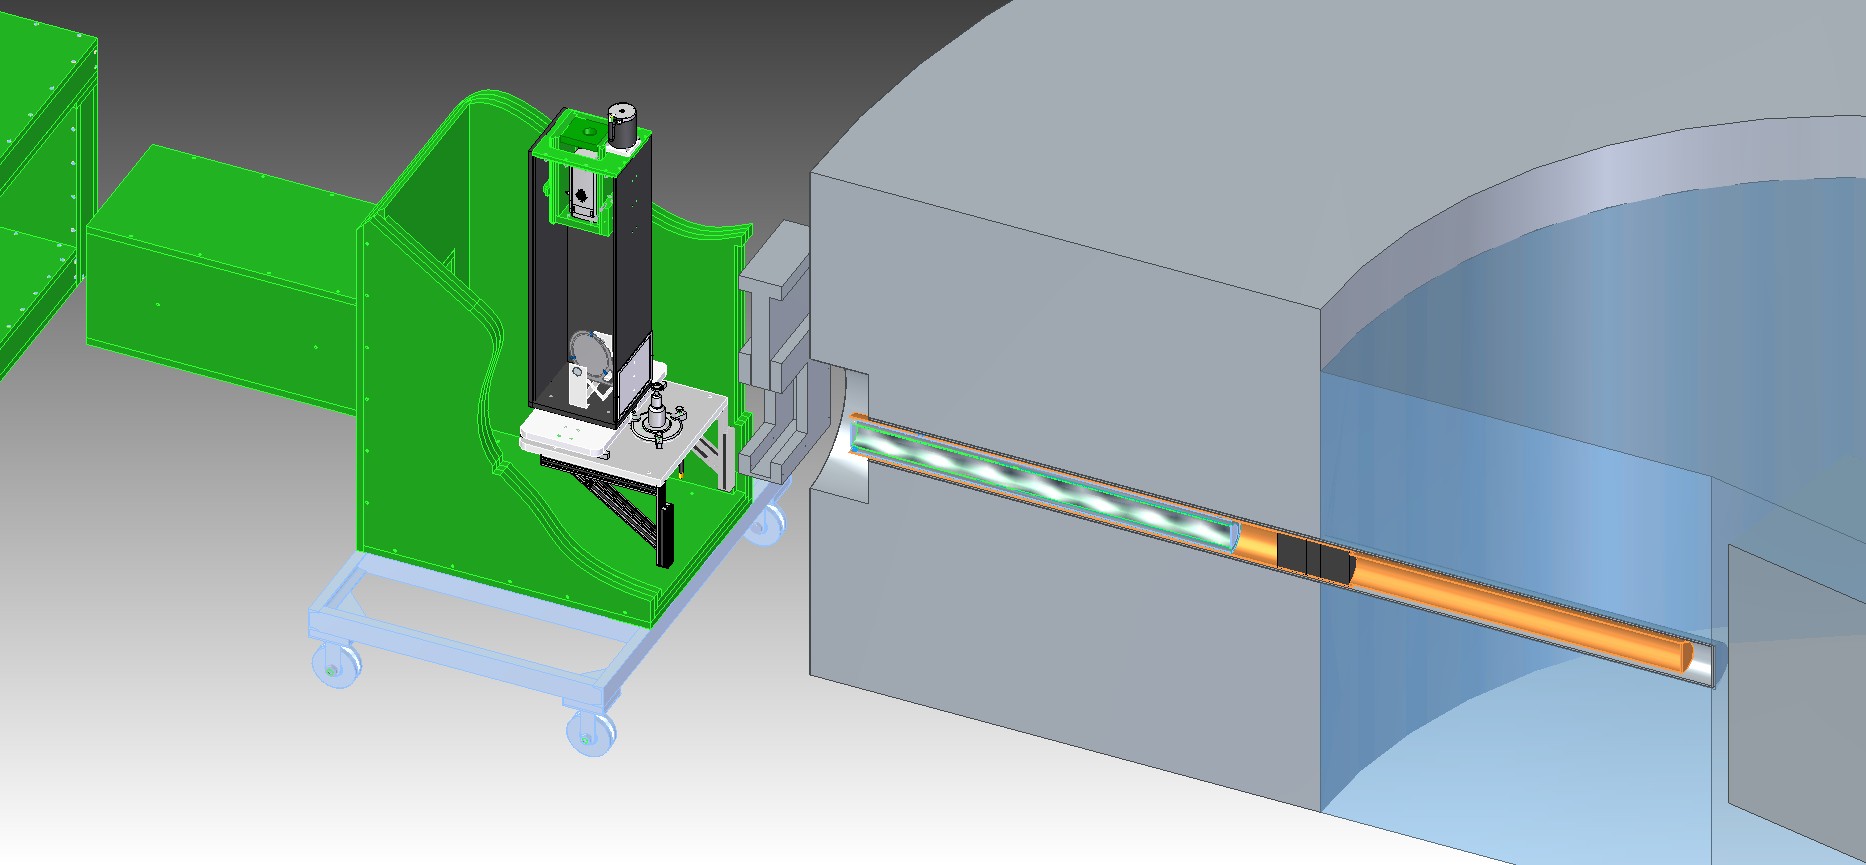 Ilustração 3D do equipamento de imageamento com nêutrons